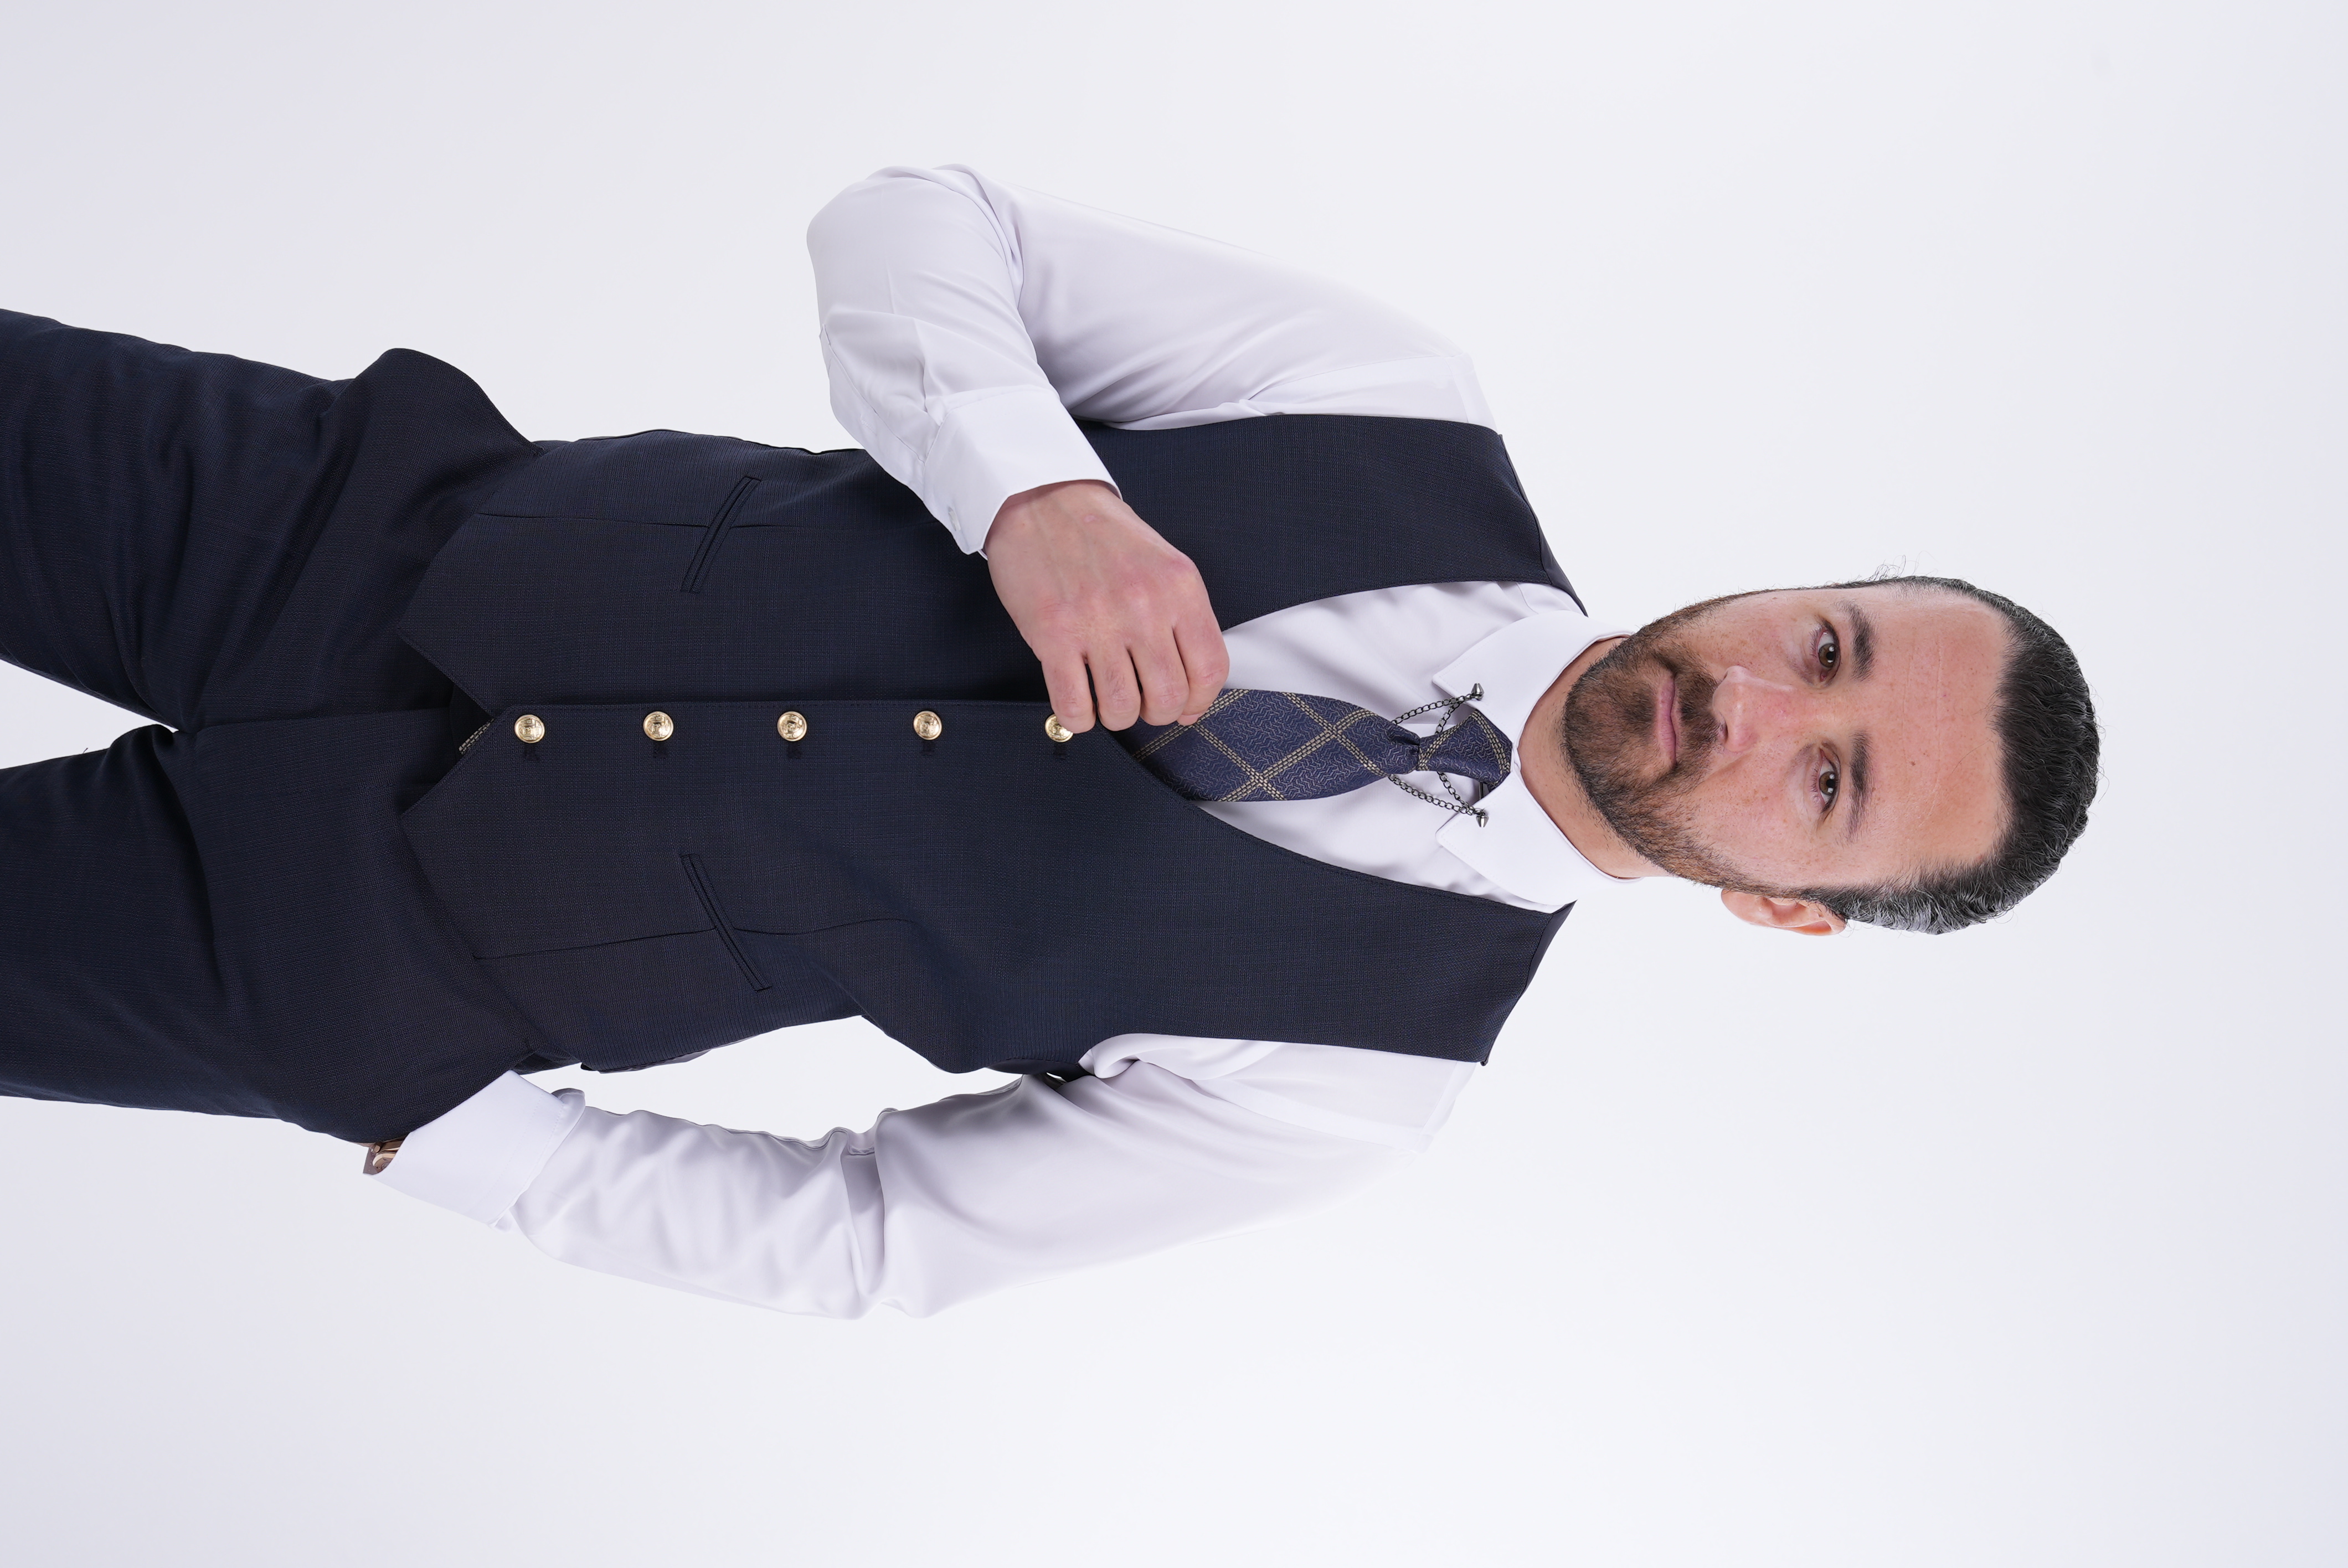 İtalyan Stil Metal Düğme  Takım Elbise Ceket Yelek  Pantolon-Lacivert